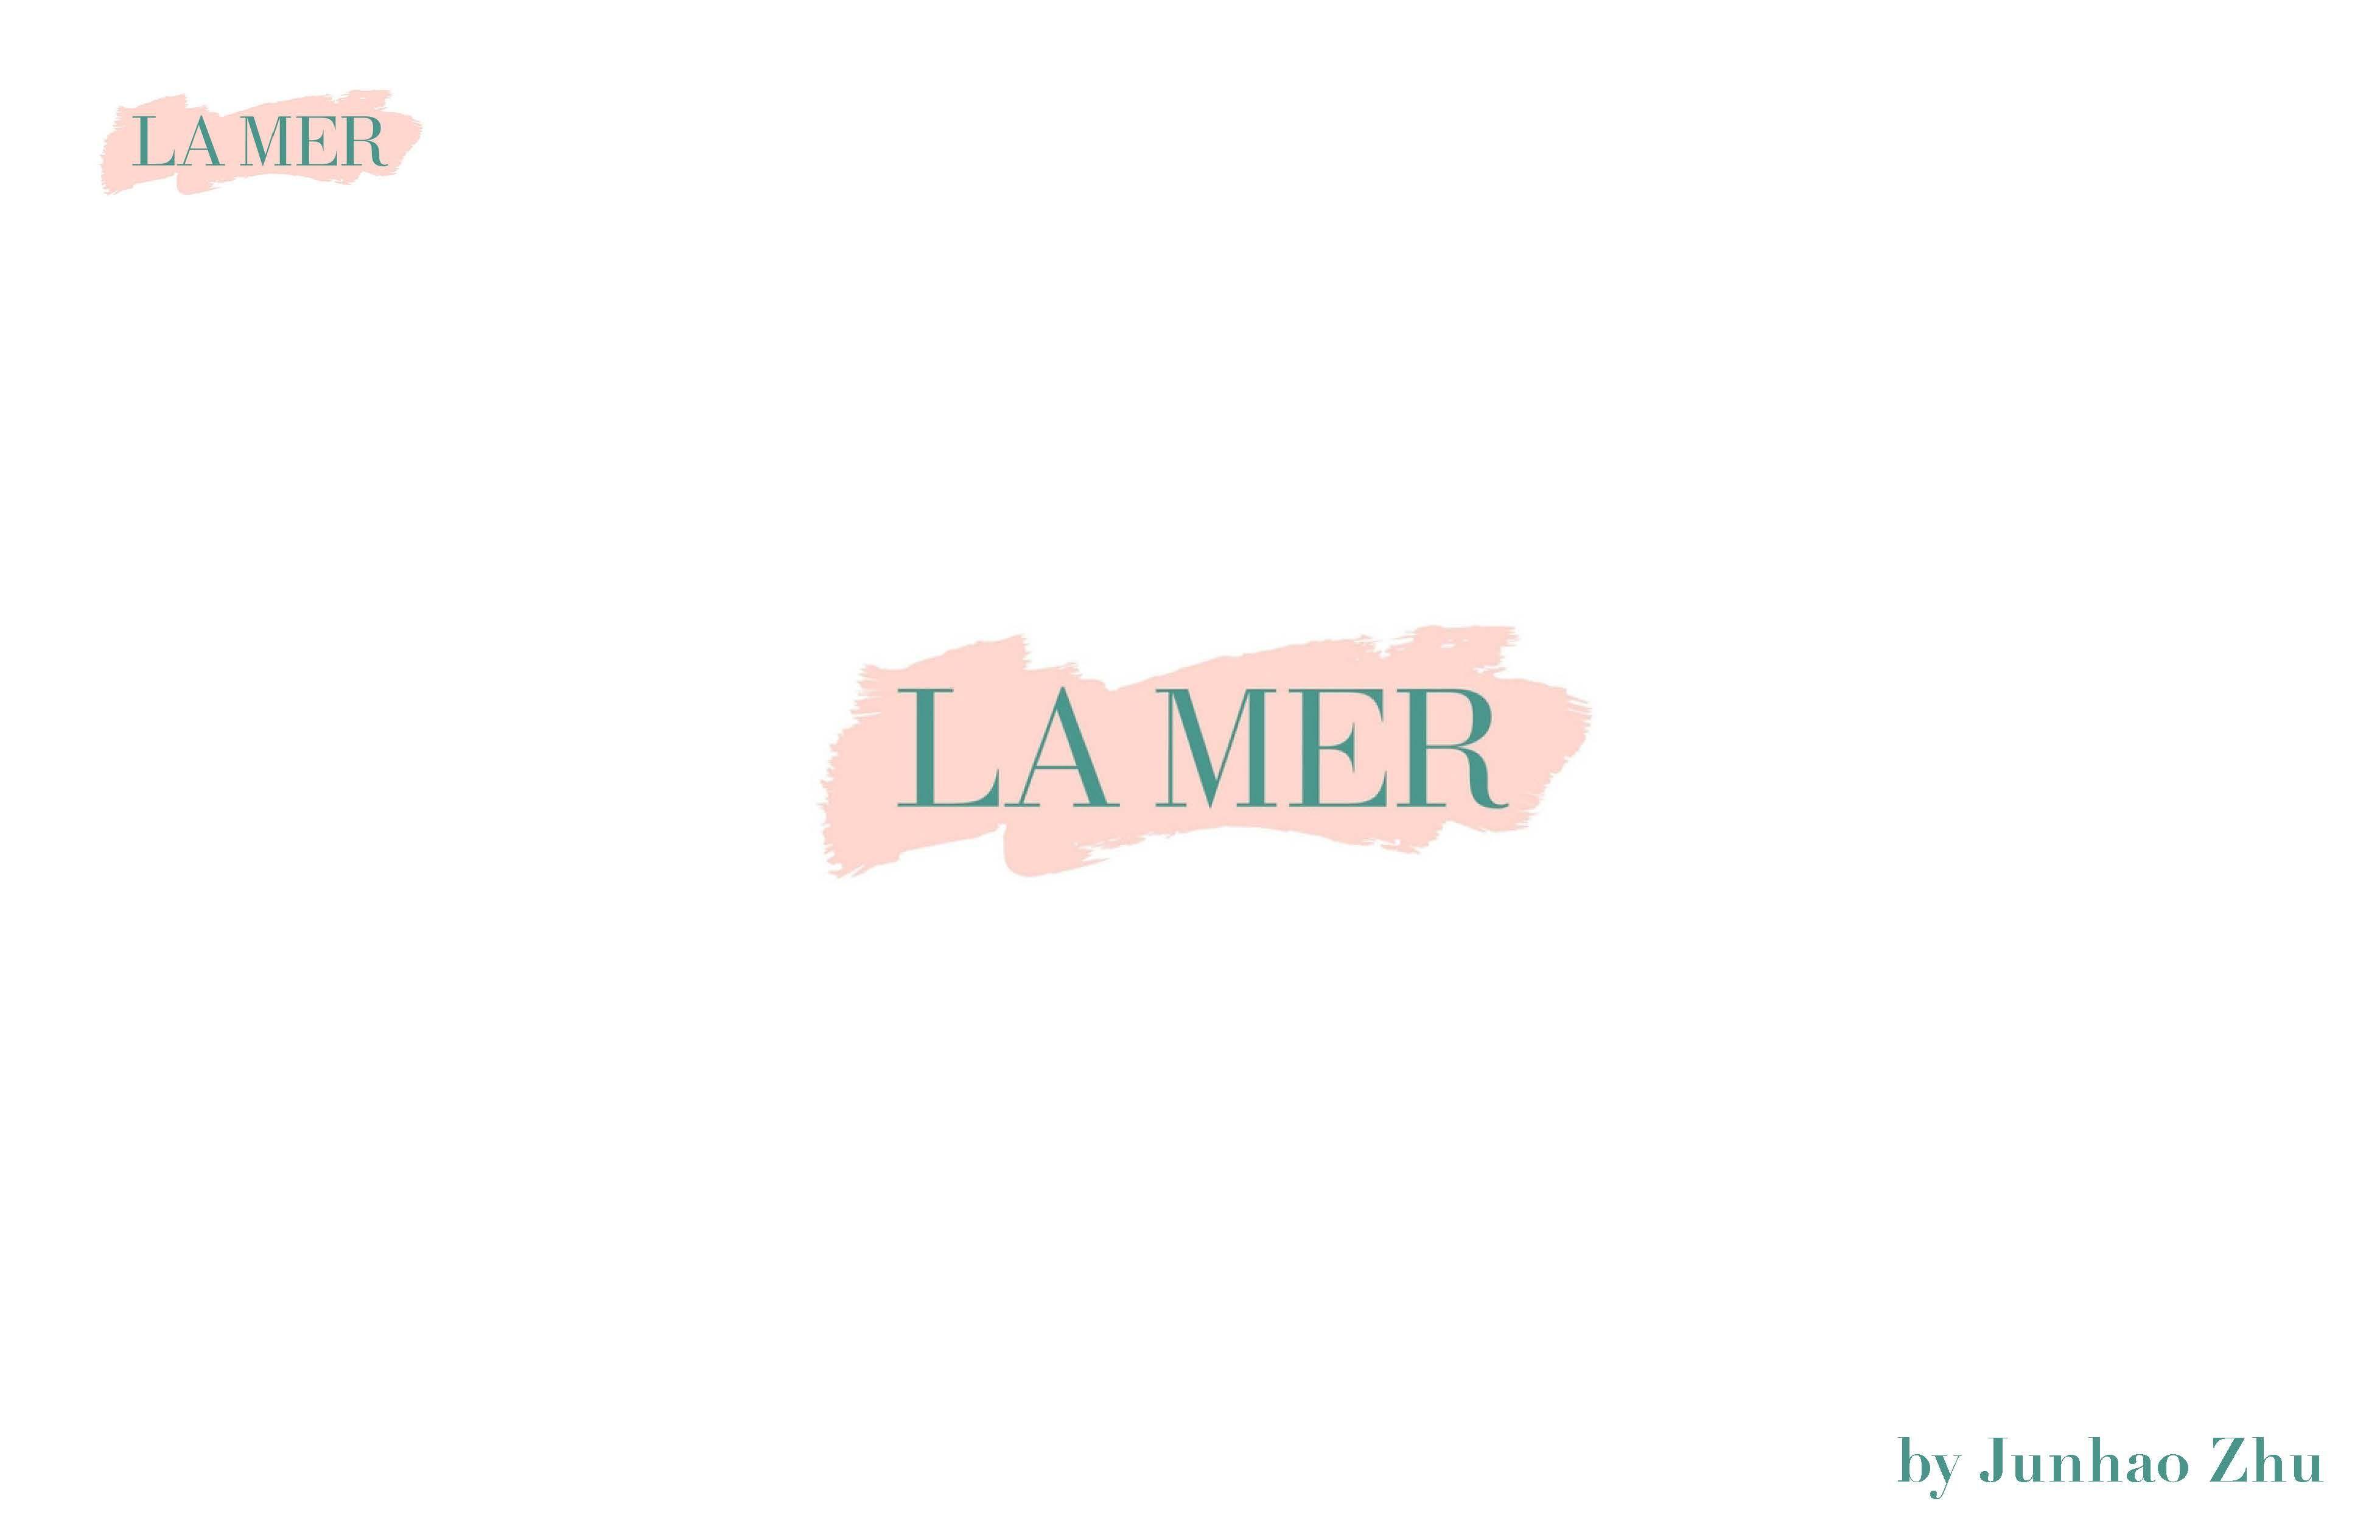 Lamer Logo - Junhao Zhu